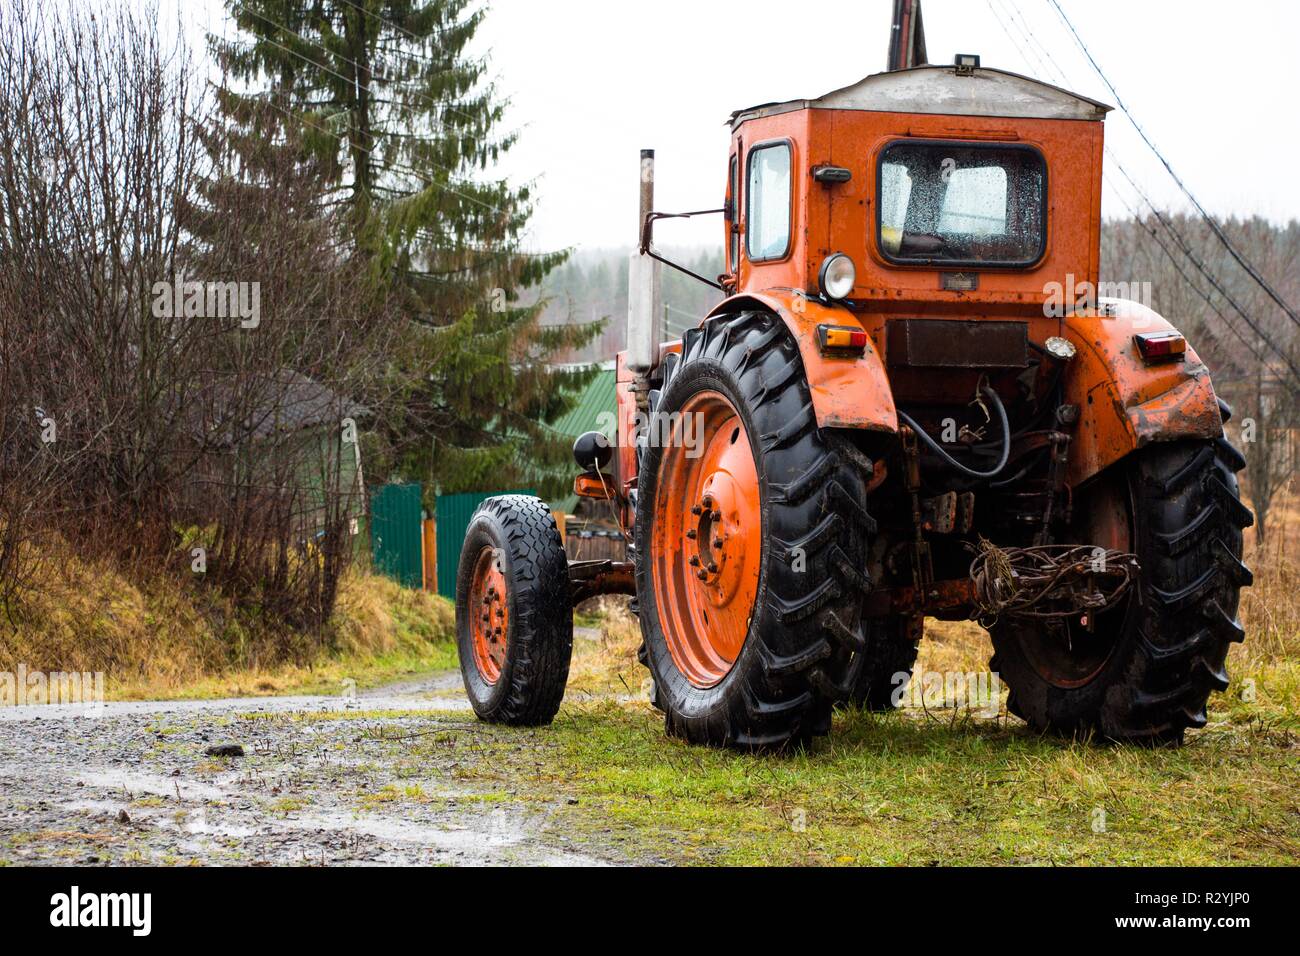 Un trattore rosso con grandi ruote sorge su una montagna in campagna. Il trattore è pronto per il lavoro sul campo ed in azienda. Foto Stock